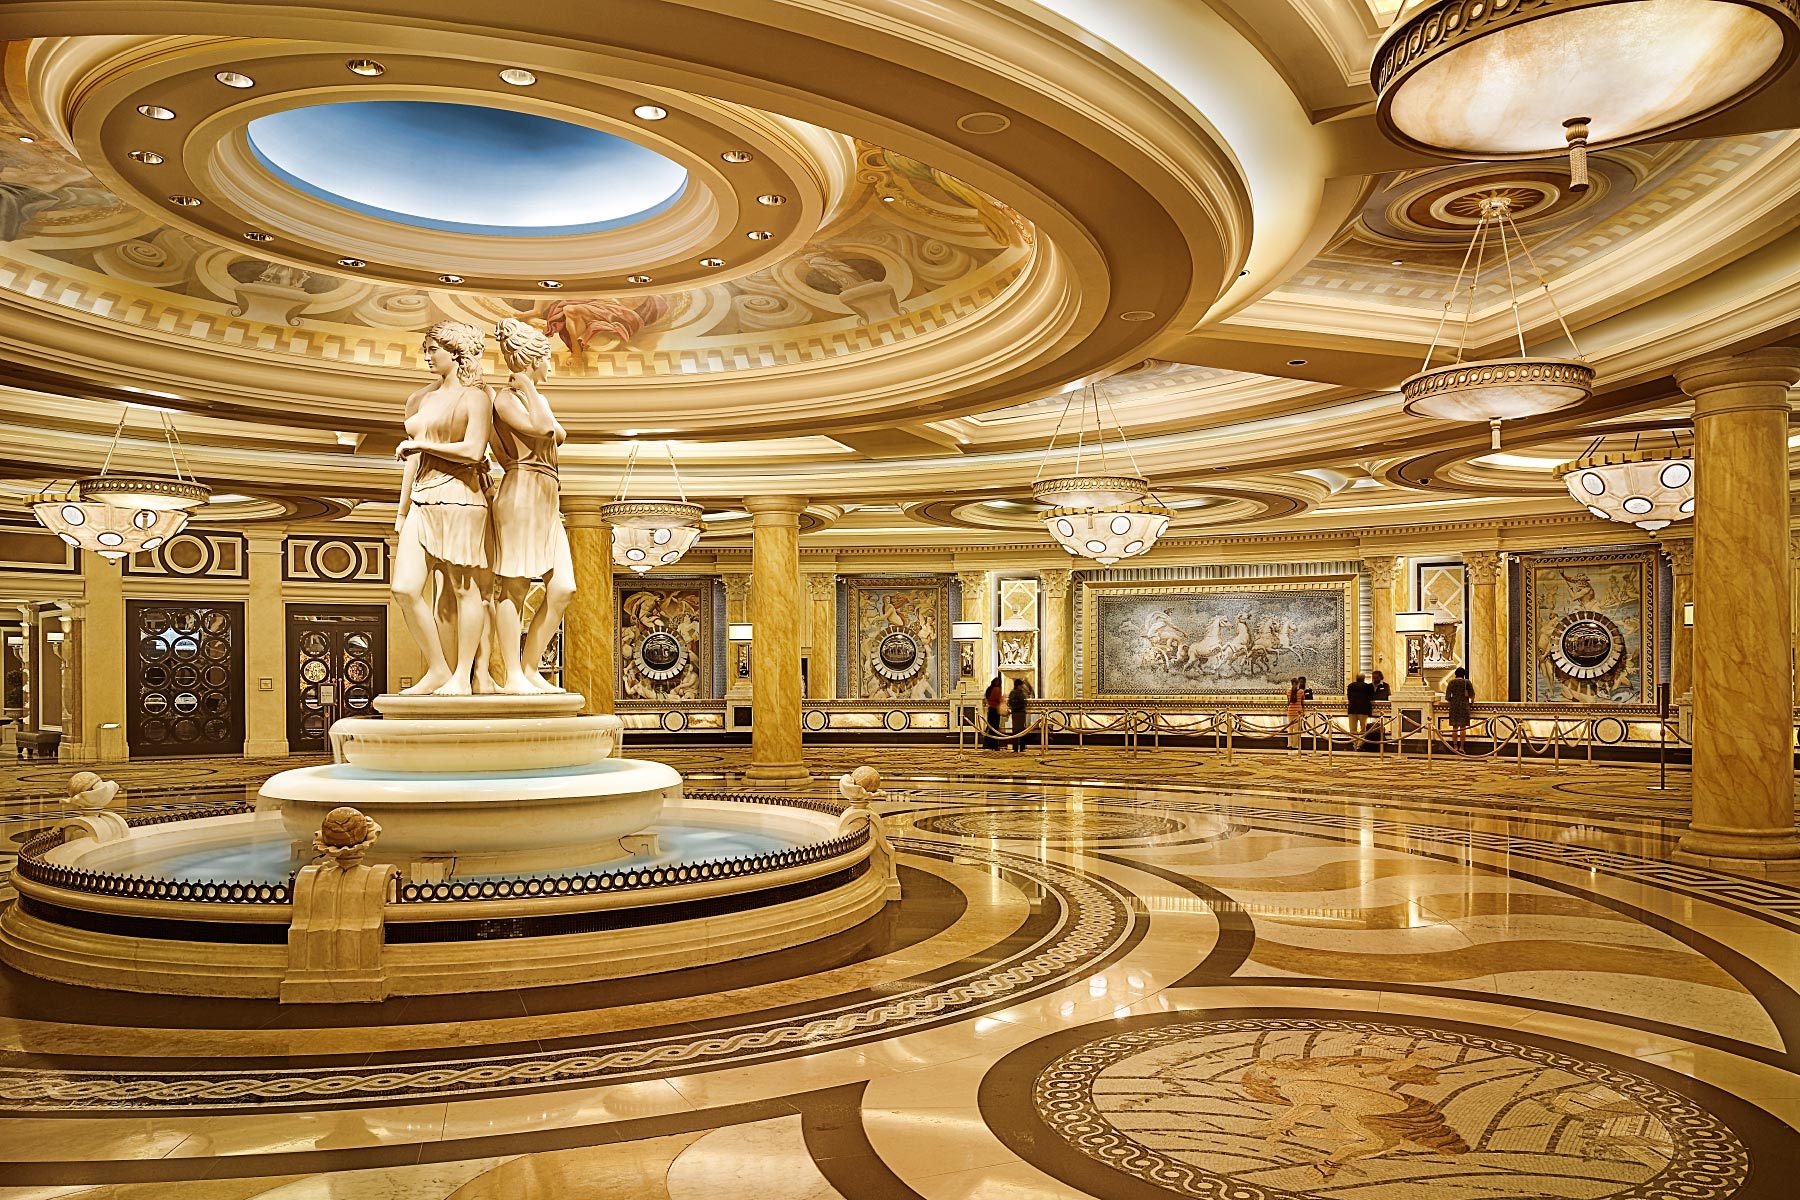 Las Vegas Caesar Palace